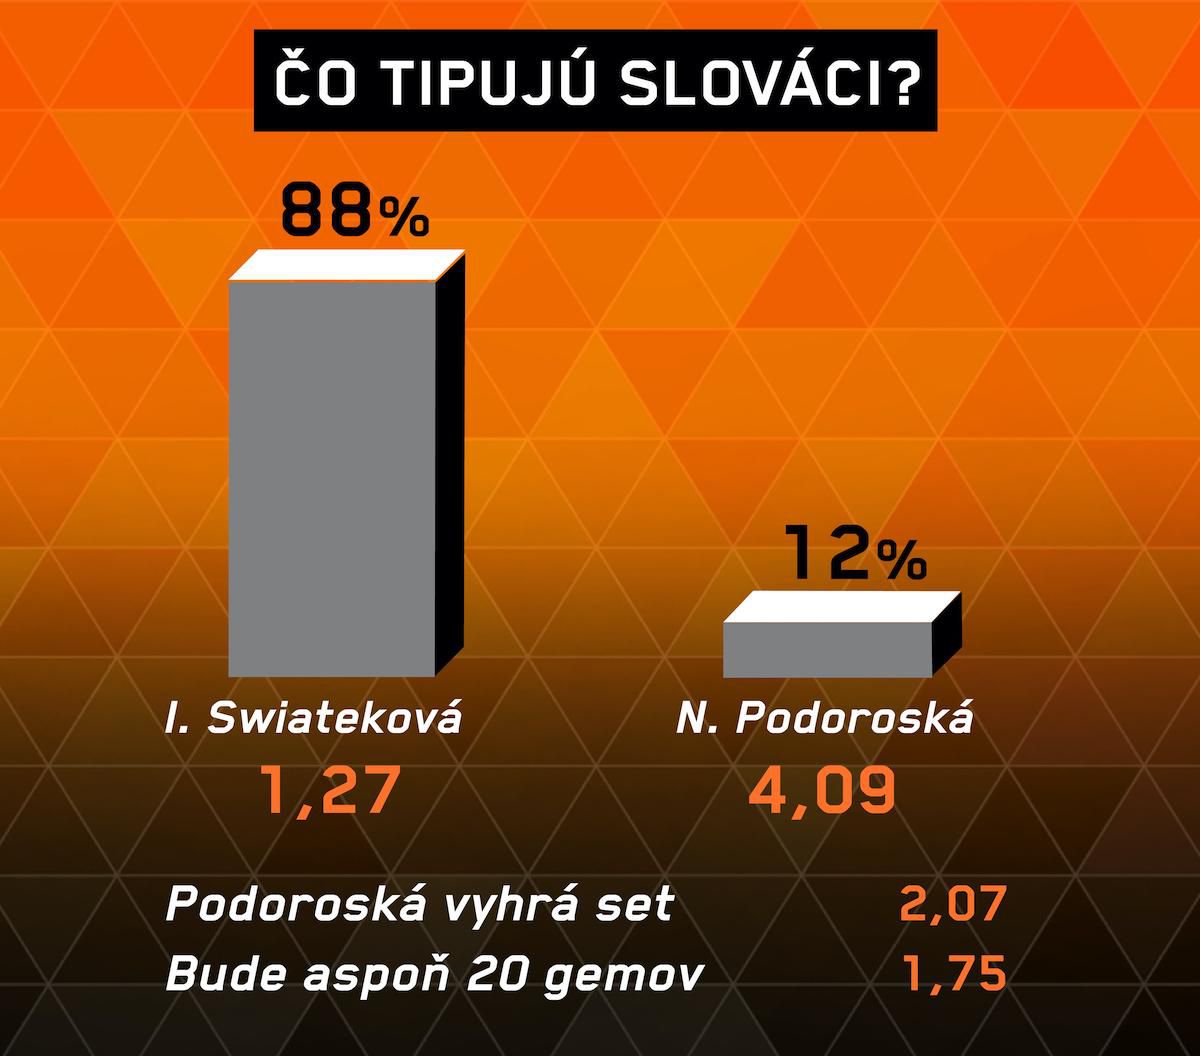 Analýza zápasu I. Swiateková – N. Podoroská.